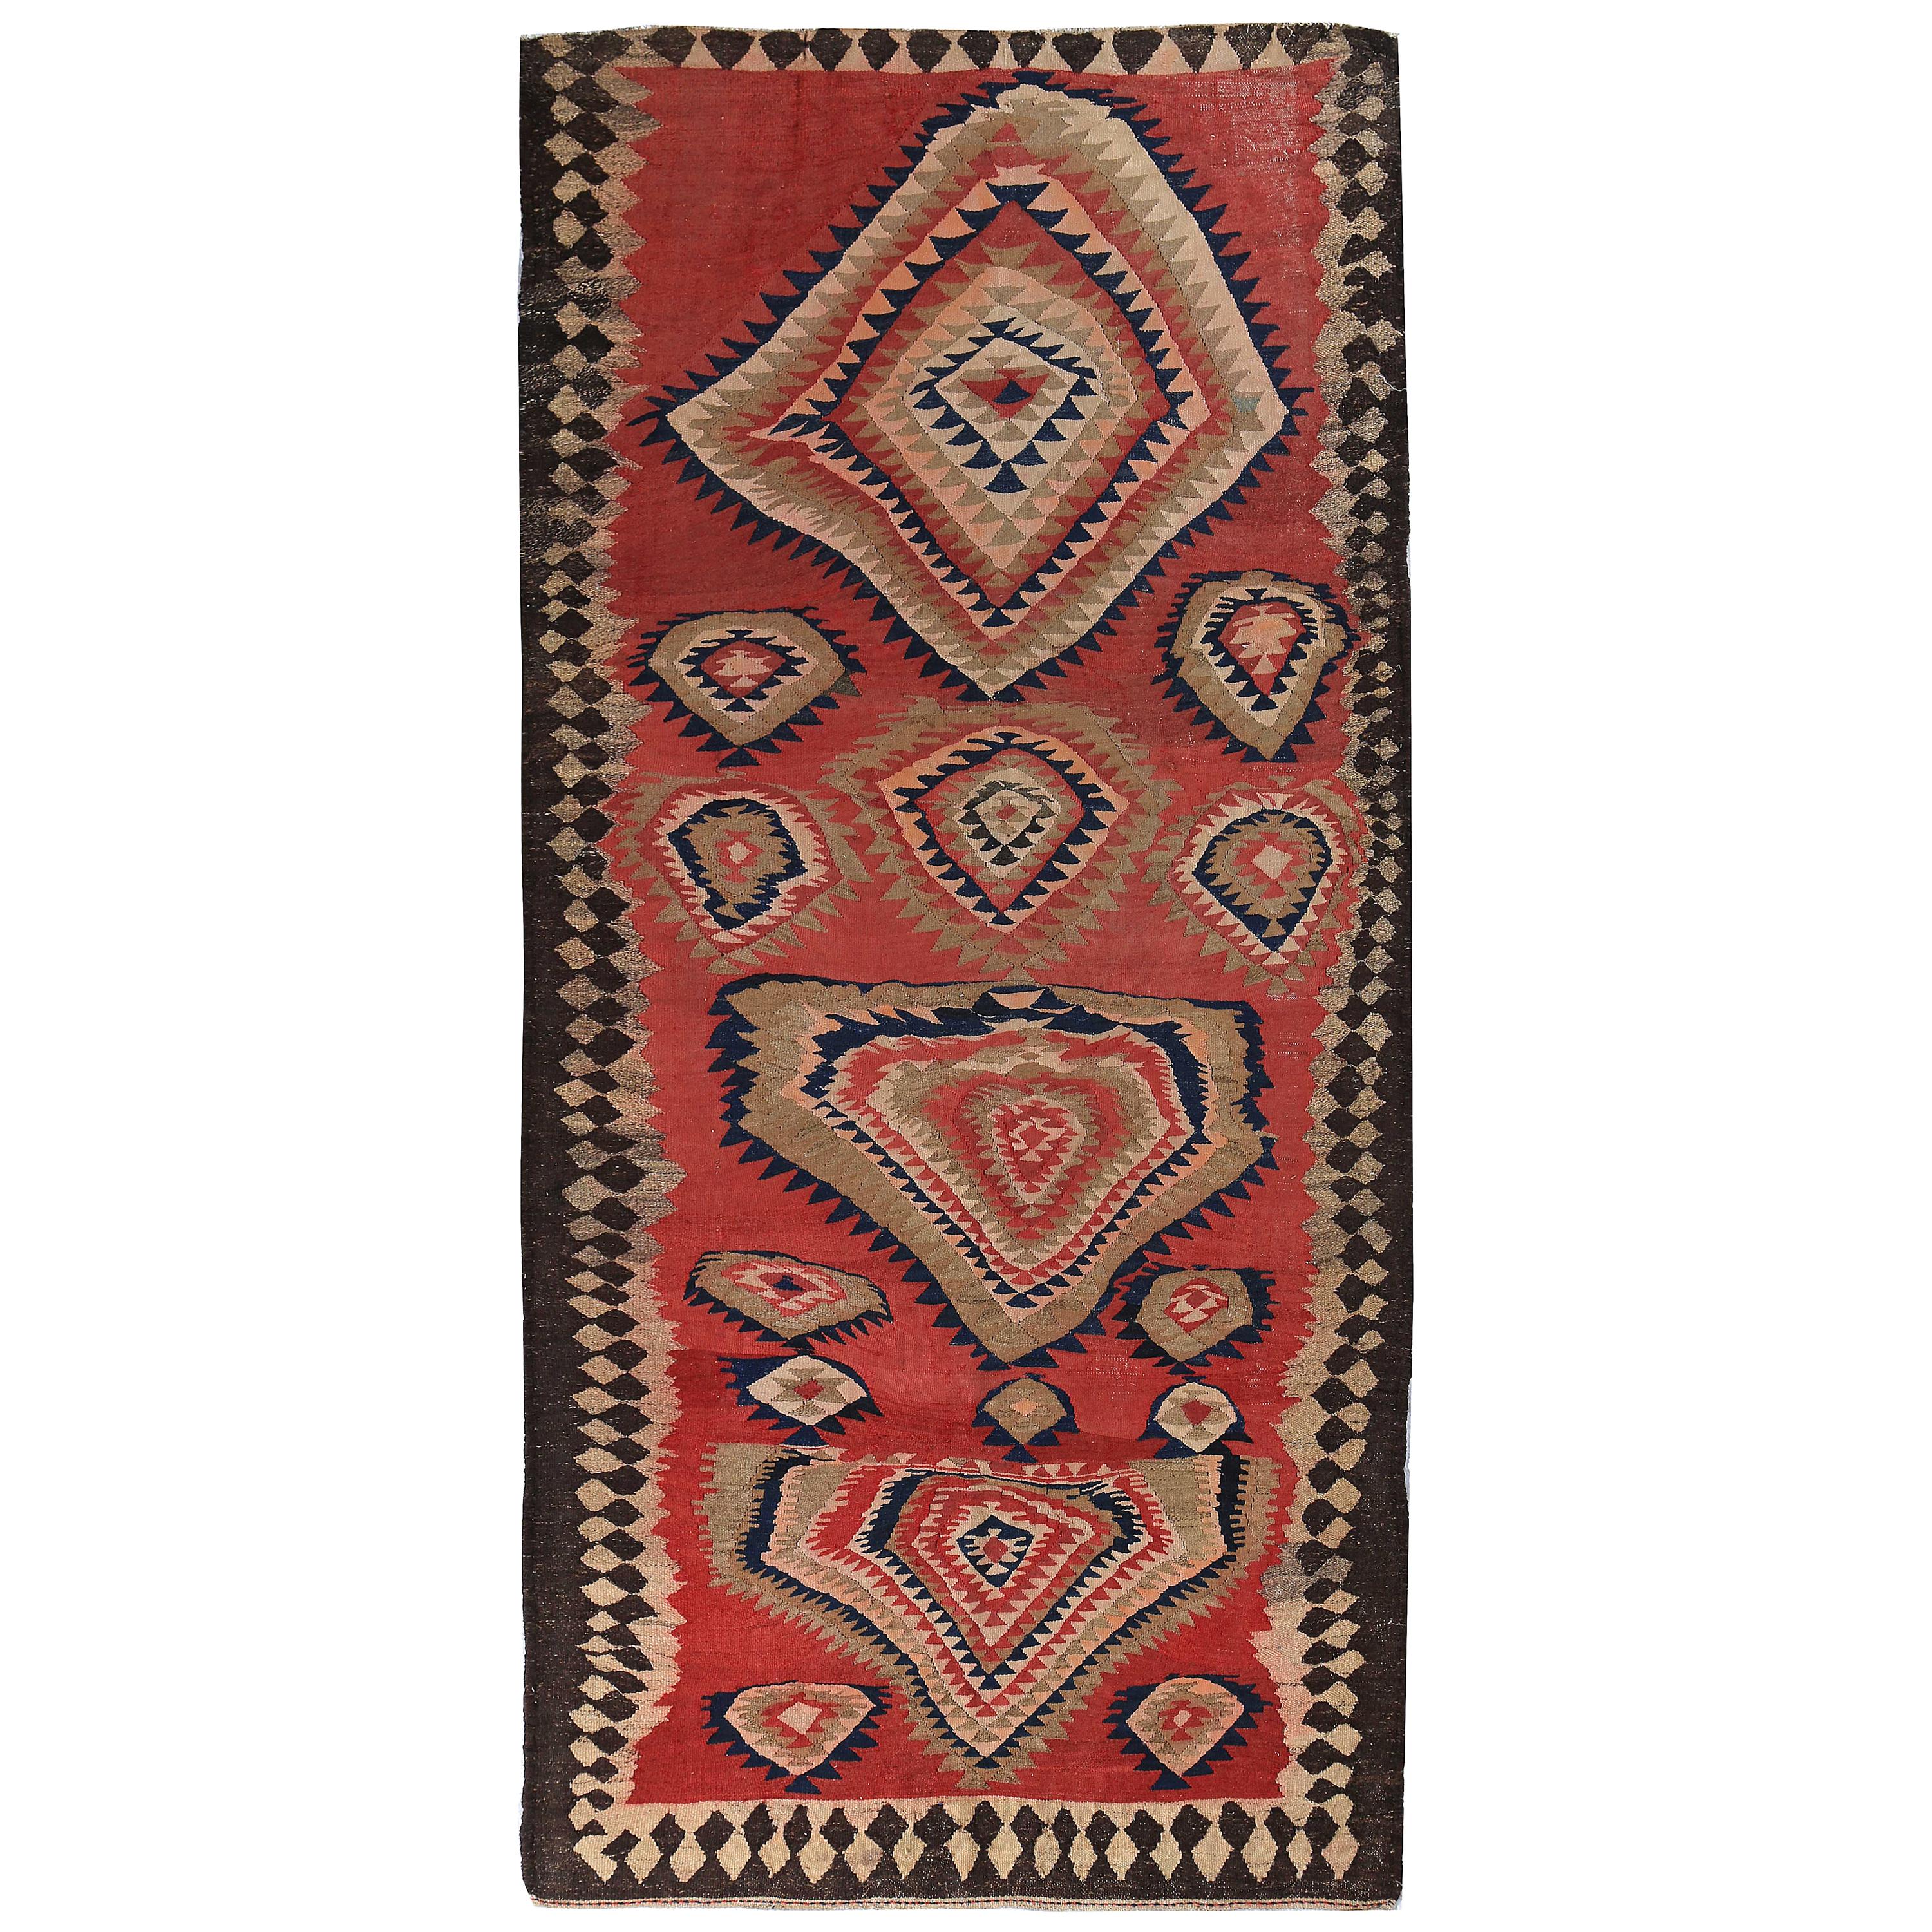 Nouveau tapis turc Kilim avec médaillons tribaux beiges et marines sur fond rouge et marron